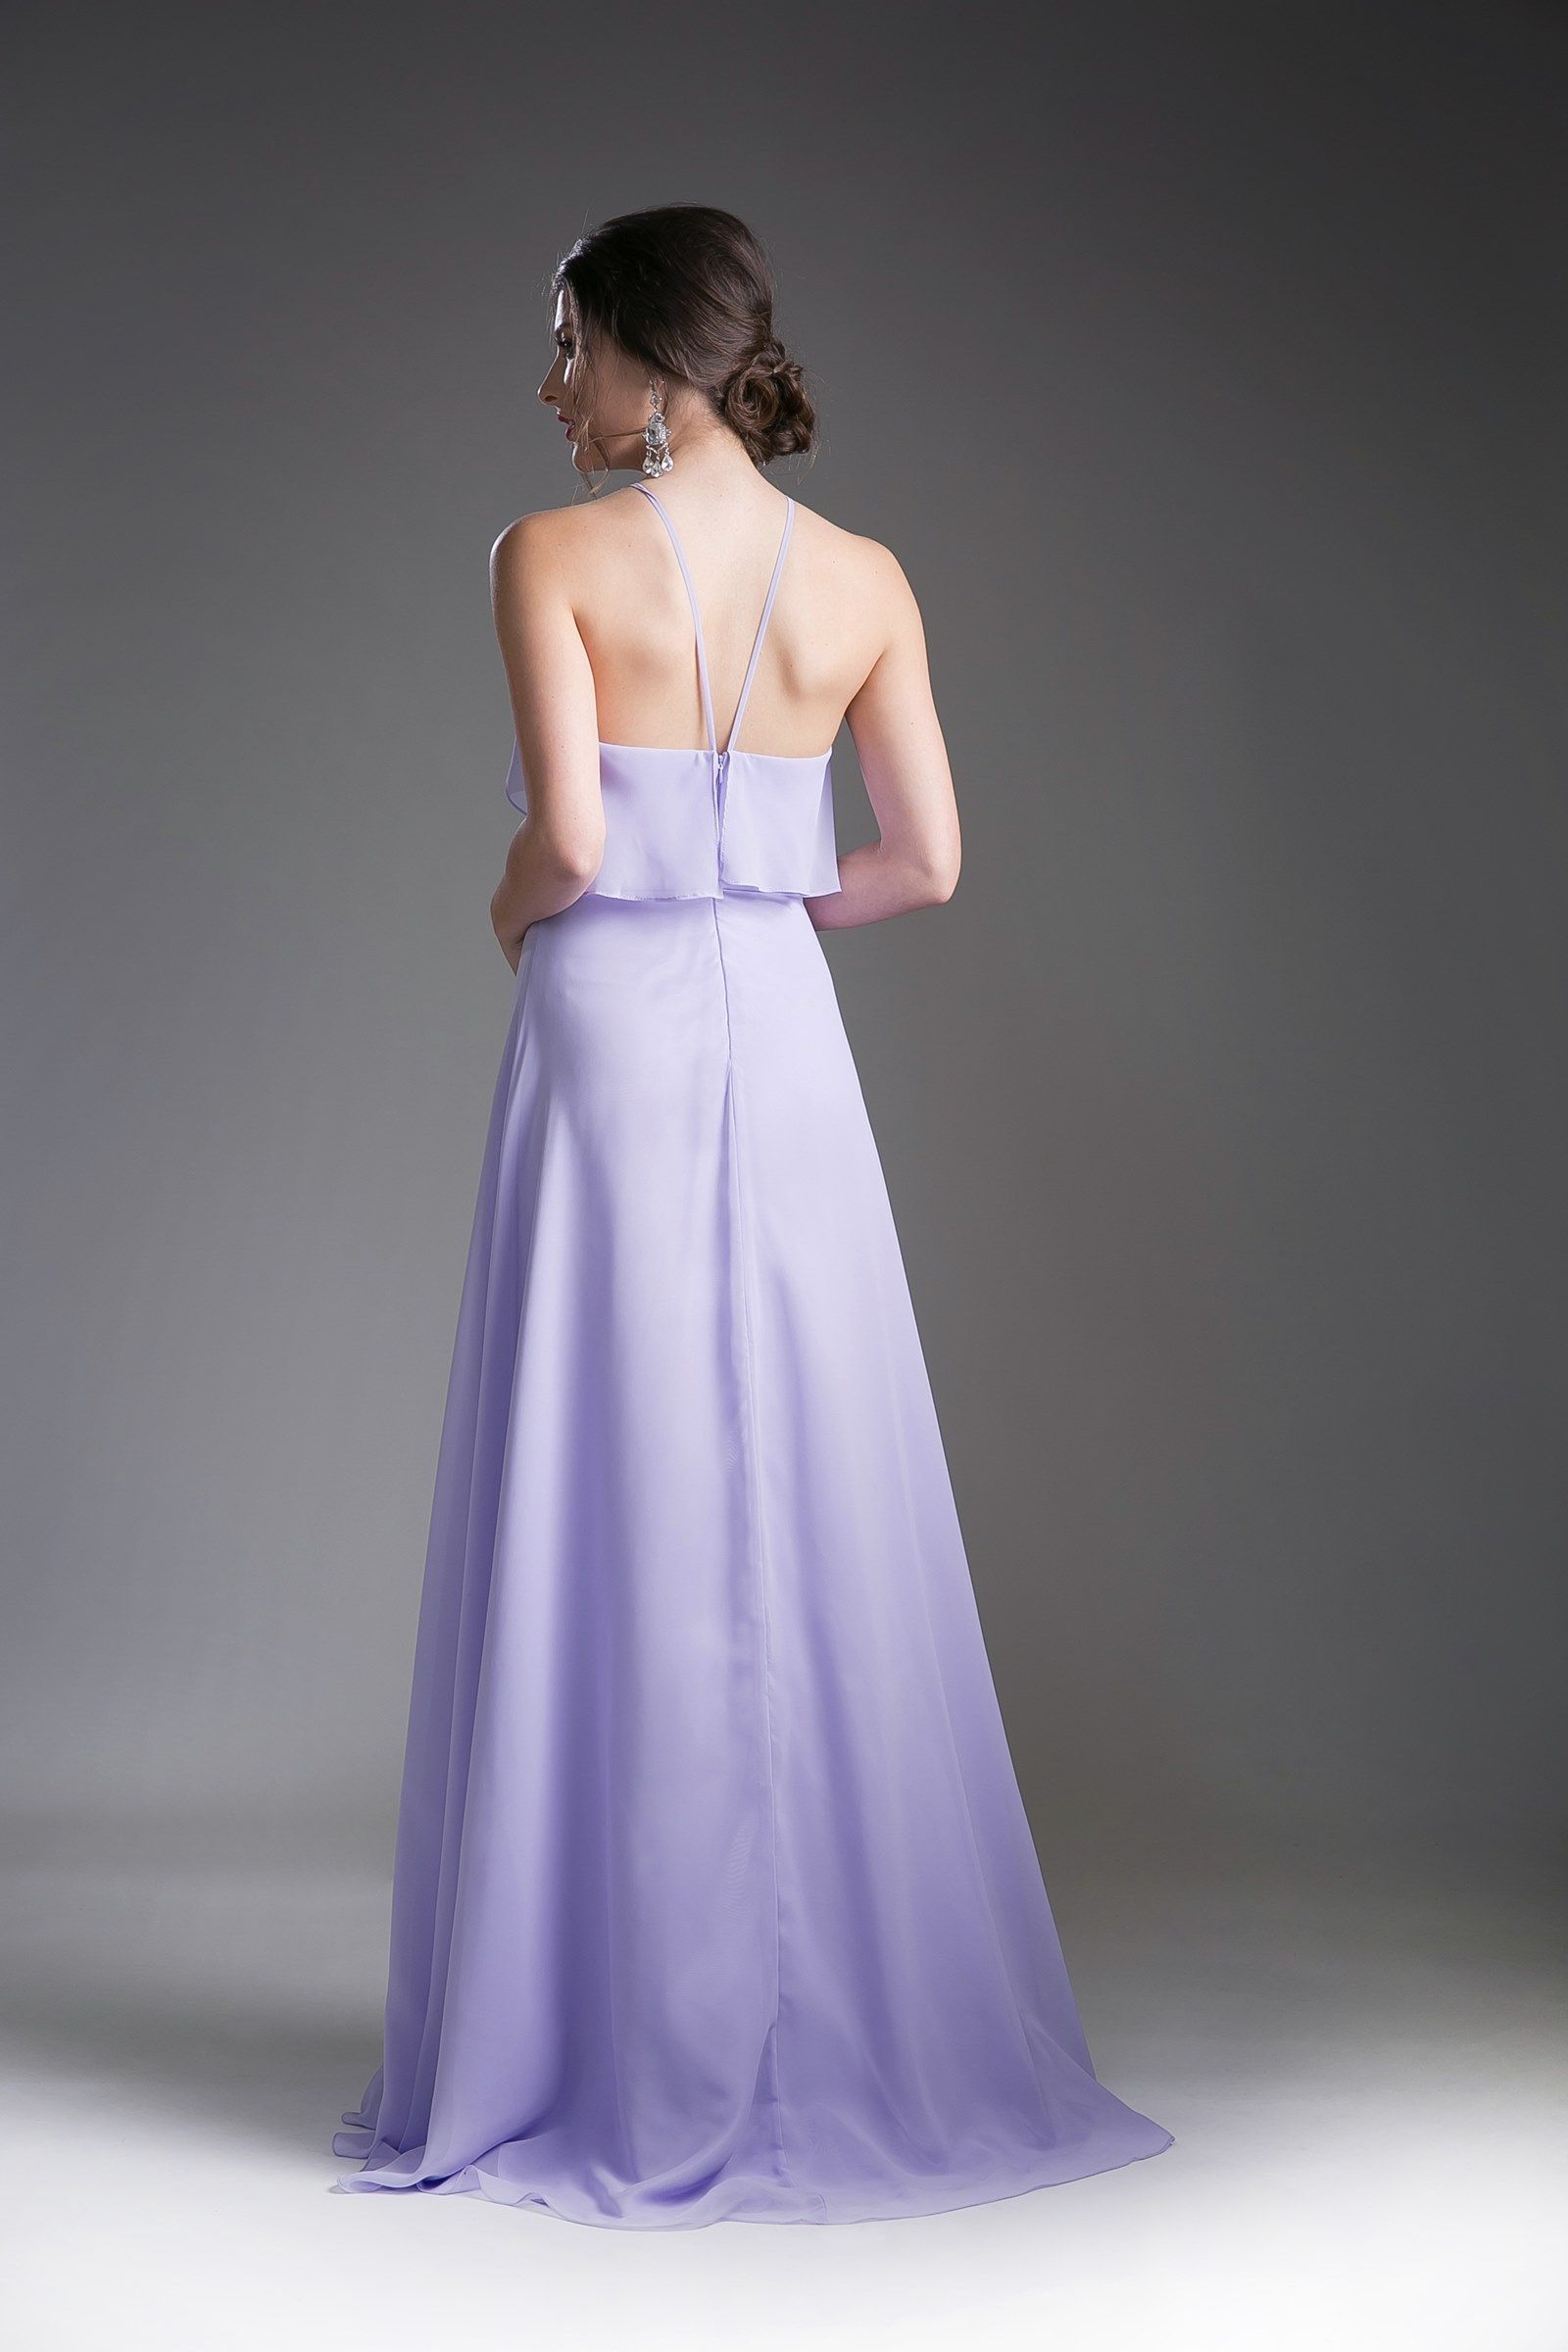 Cinderella Divine -13032 Strapped Halter A-line Dress